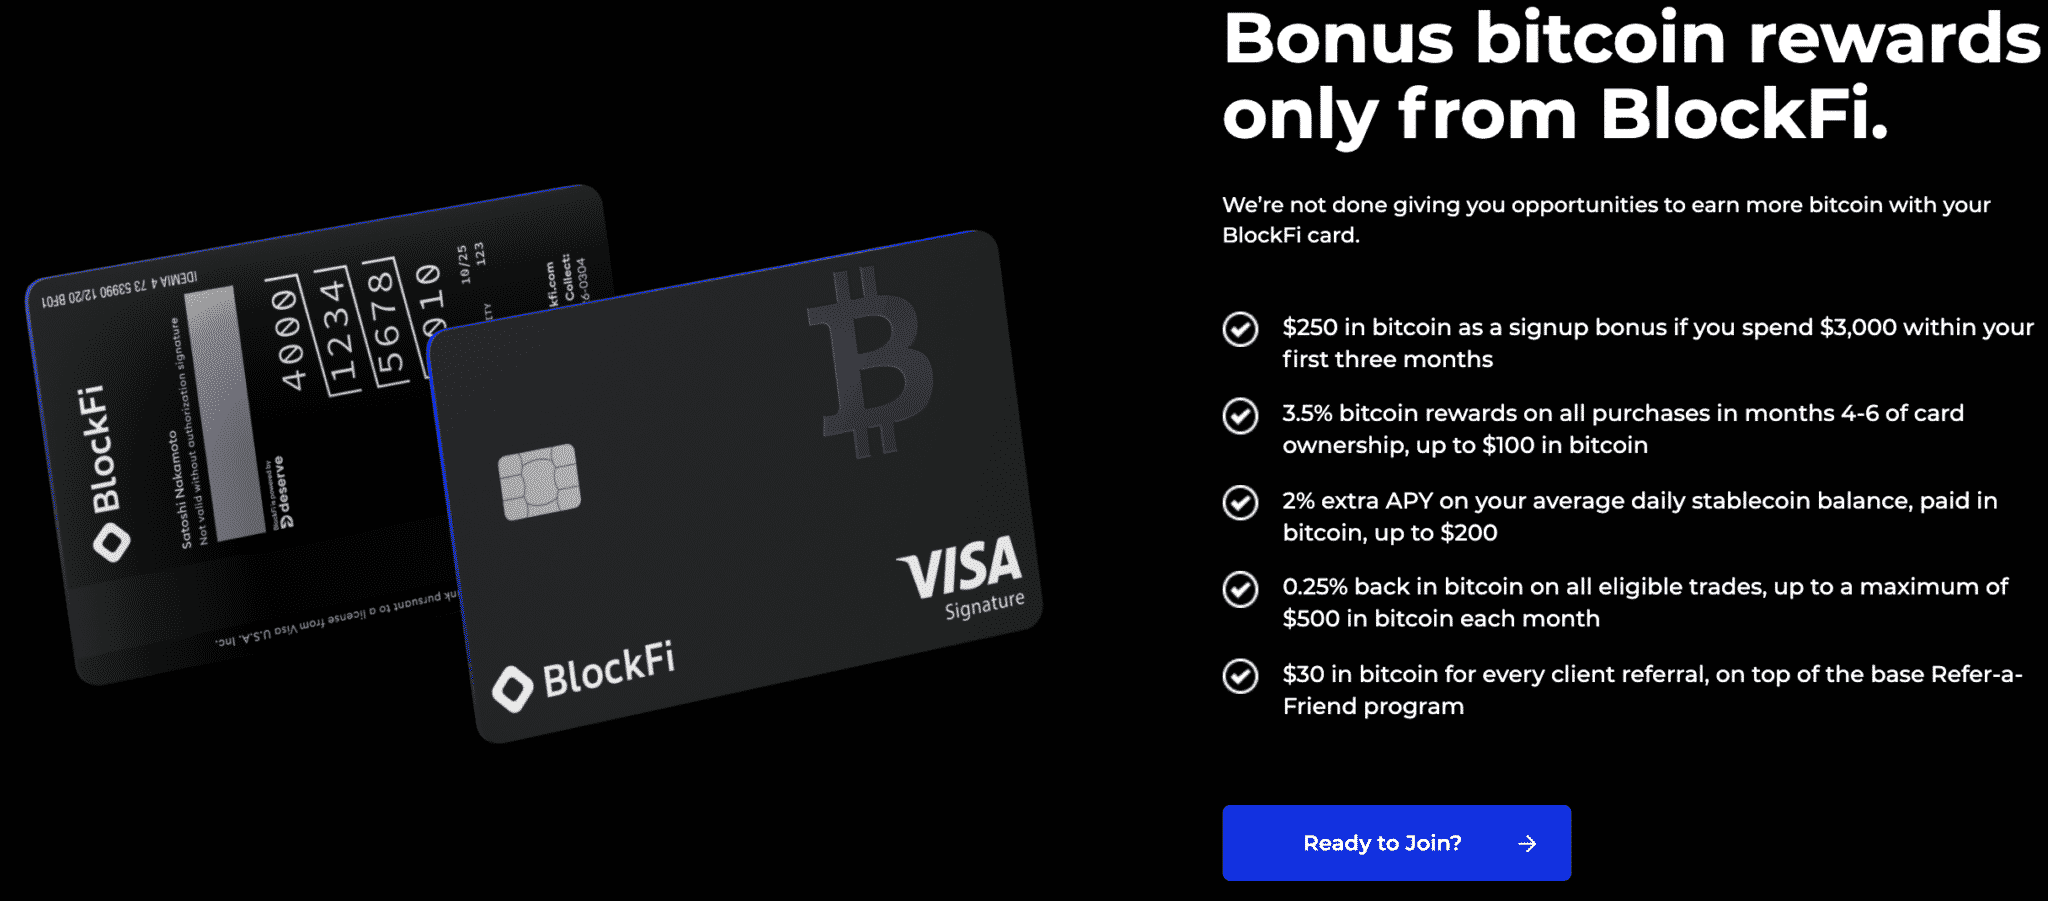 Bonusi s ciljne strani kreditne kartice BlockFi